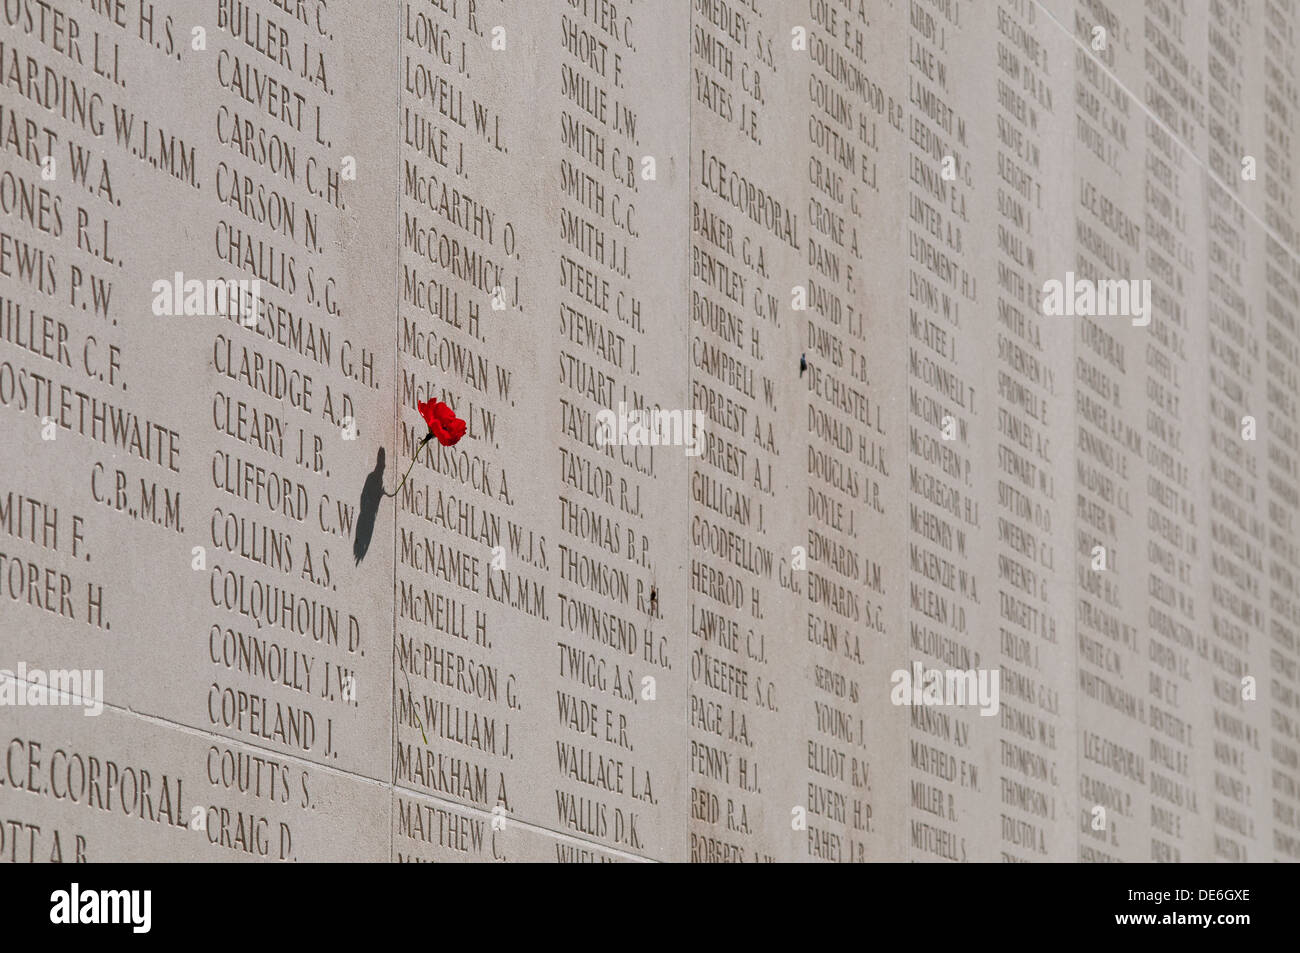 Mohn an Namen an Wand befestigt graviert mit Namen der vermissten, Australian National War Memorial, Villers-Bretonneux, Somme Stockfoto